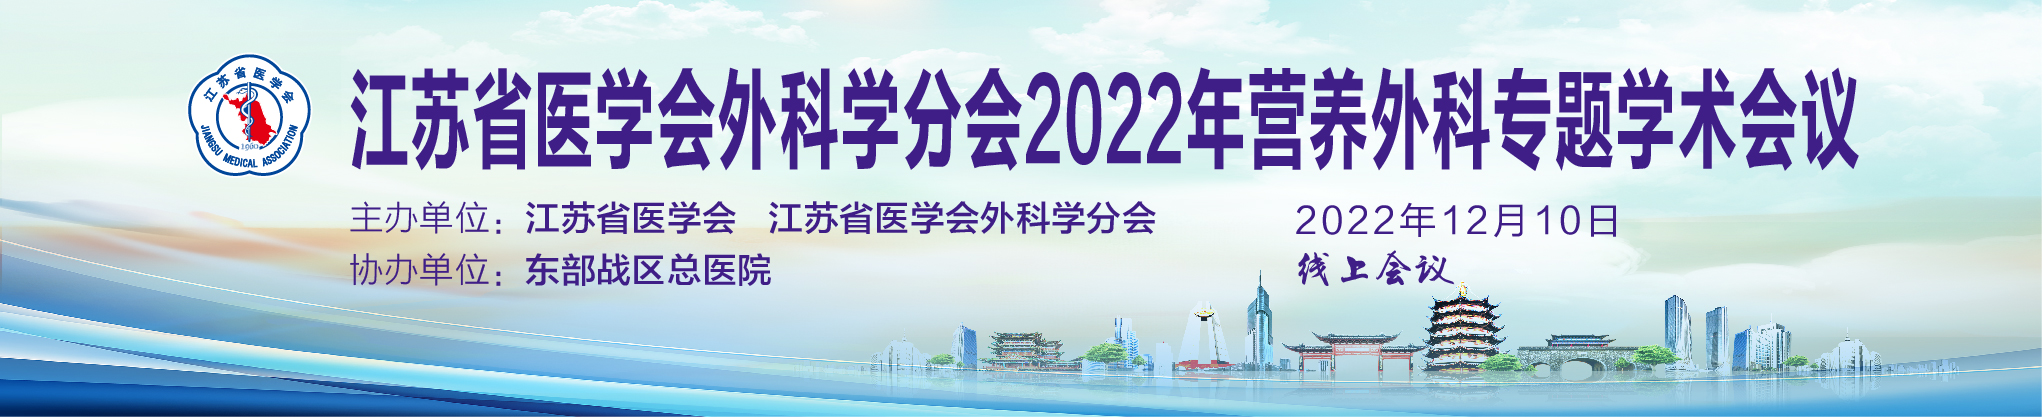 2022年江苏省医学会外科学分会营养外科专题学术会议